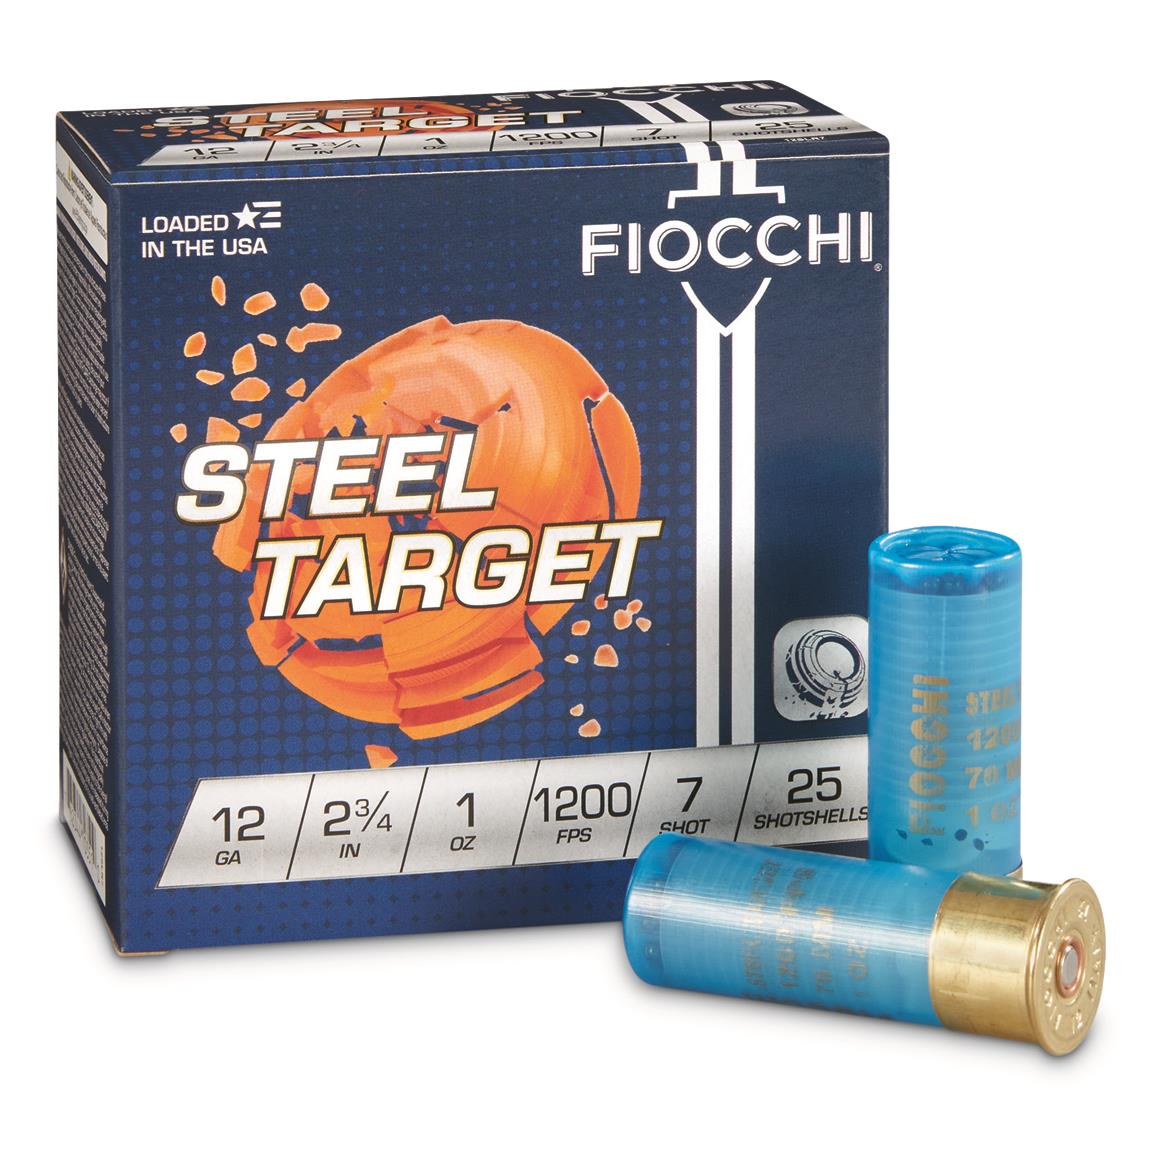 Fiocchi Target 12SLR7, 12 Gauge Ammo, 2 3/4", 1 oz. Steel Shot, 250 Rounds